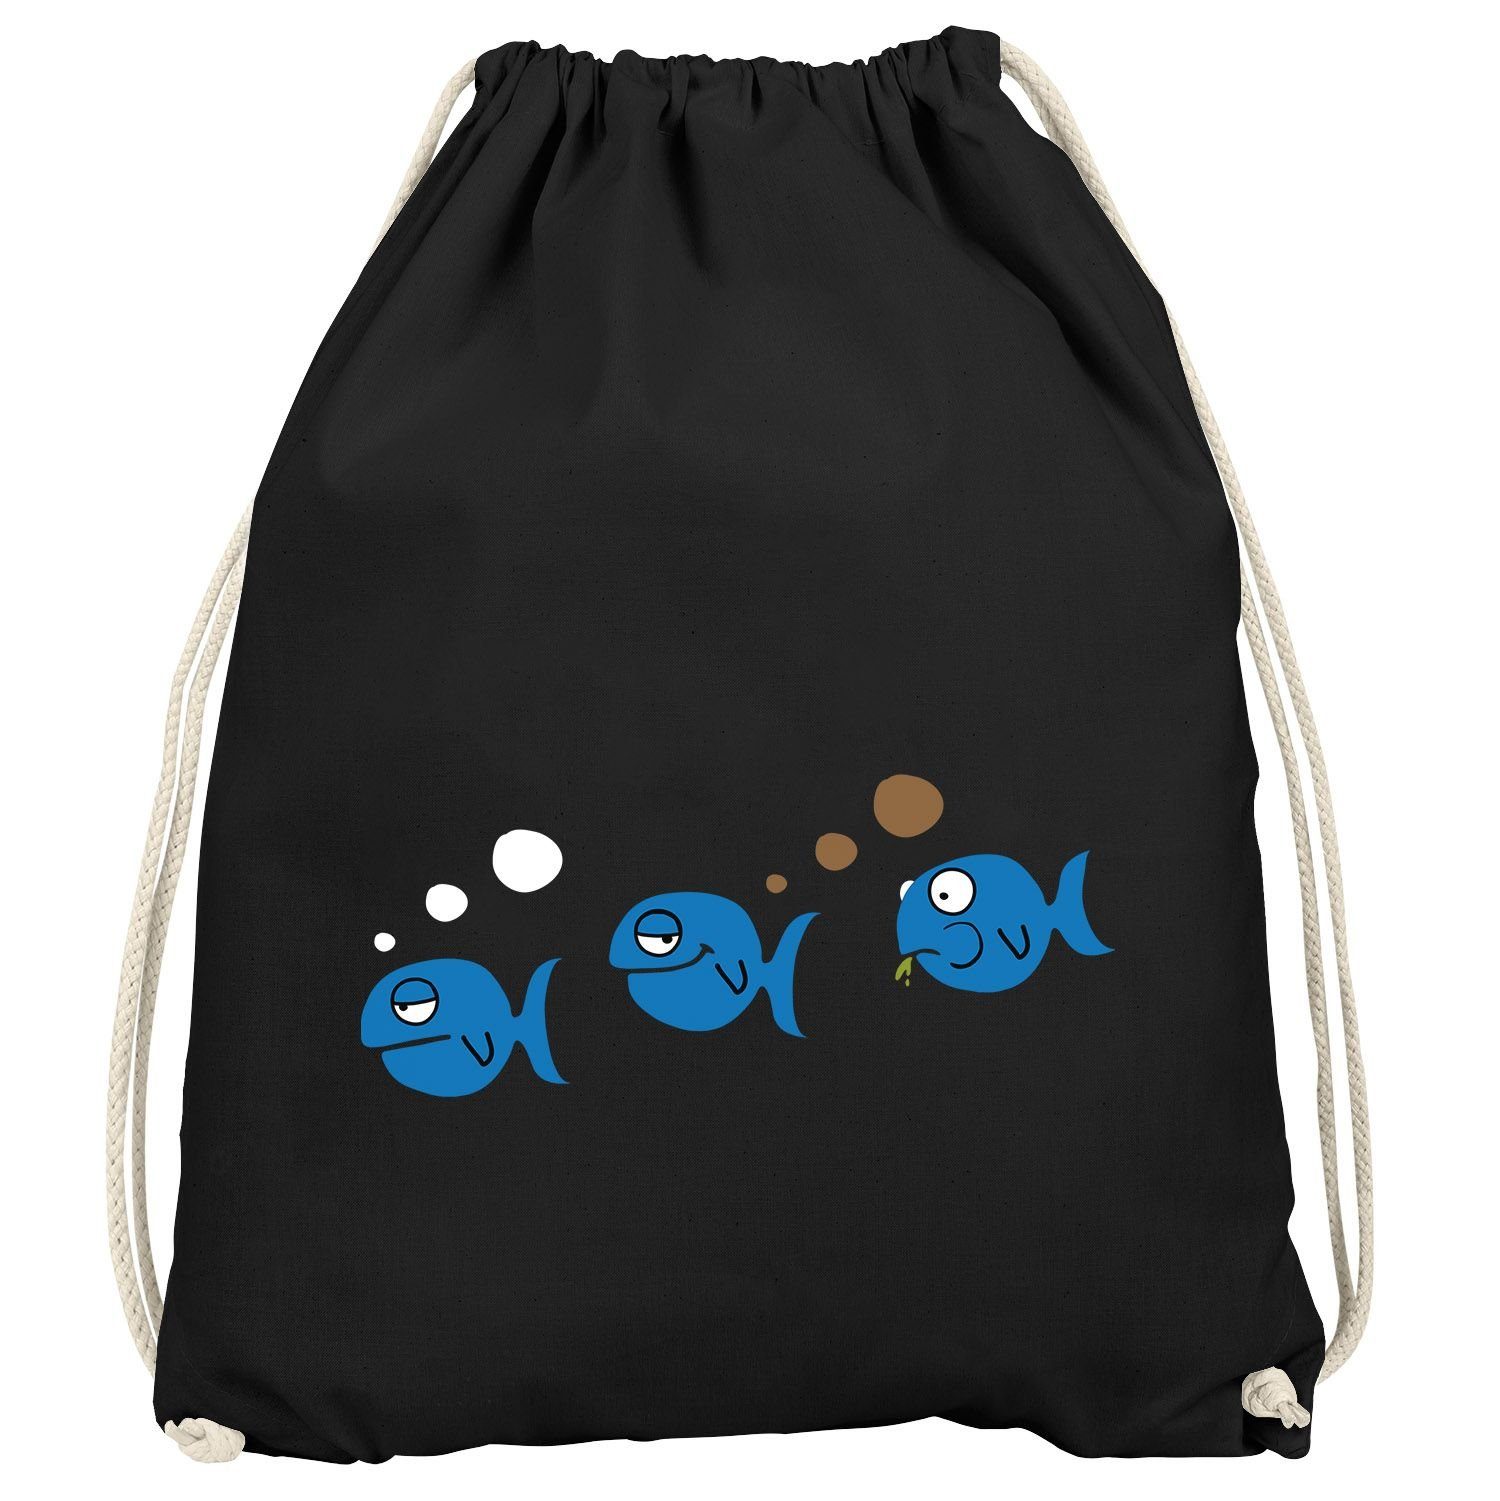 lustig Turnbeutel Moonworks® Witz furzen Fische MoonWorks Fischfurz Meme Fun-Shirt Gymbag Turnbeutel Scherz